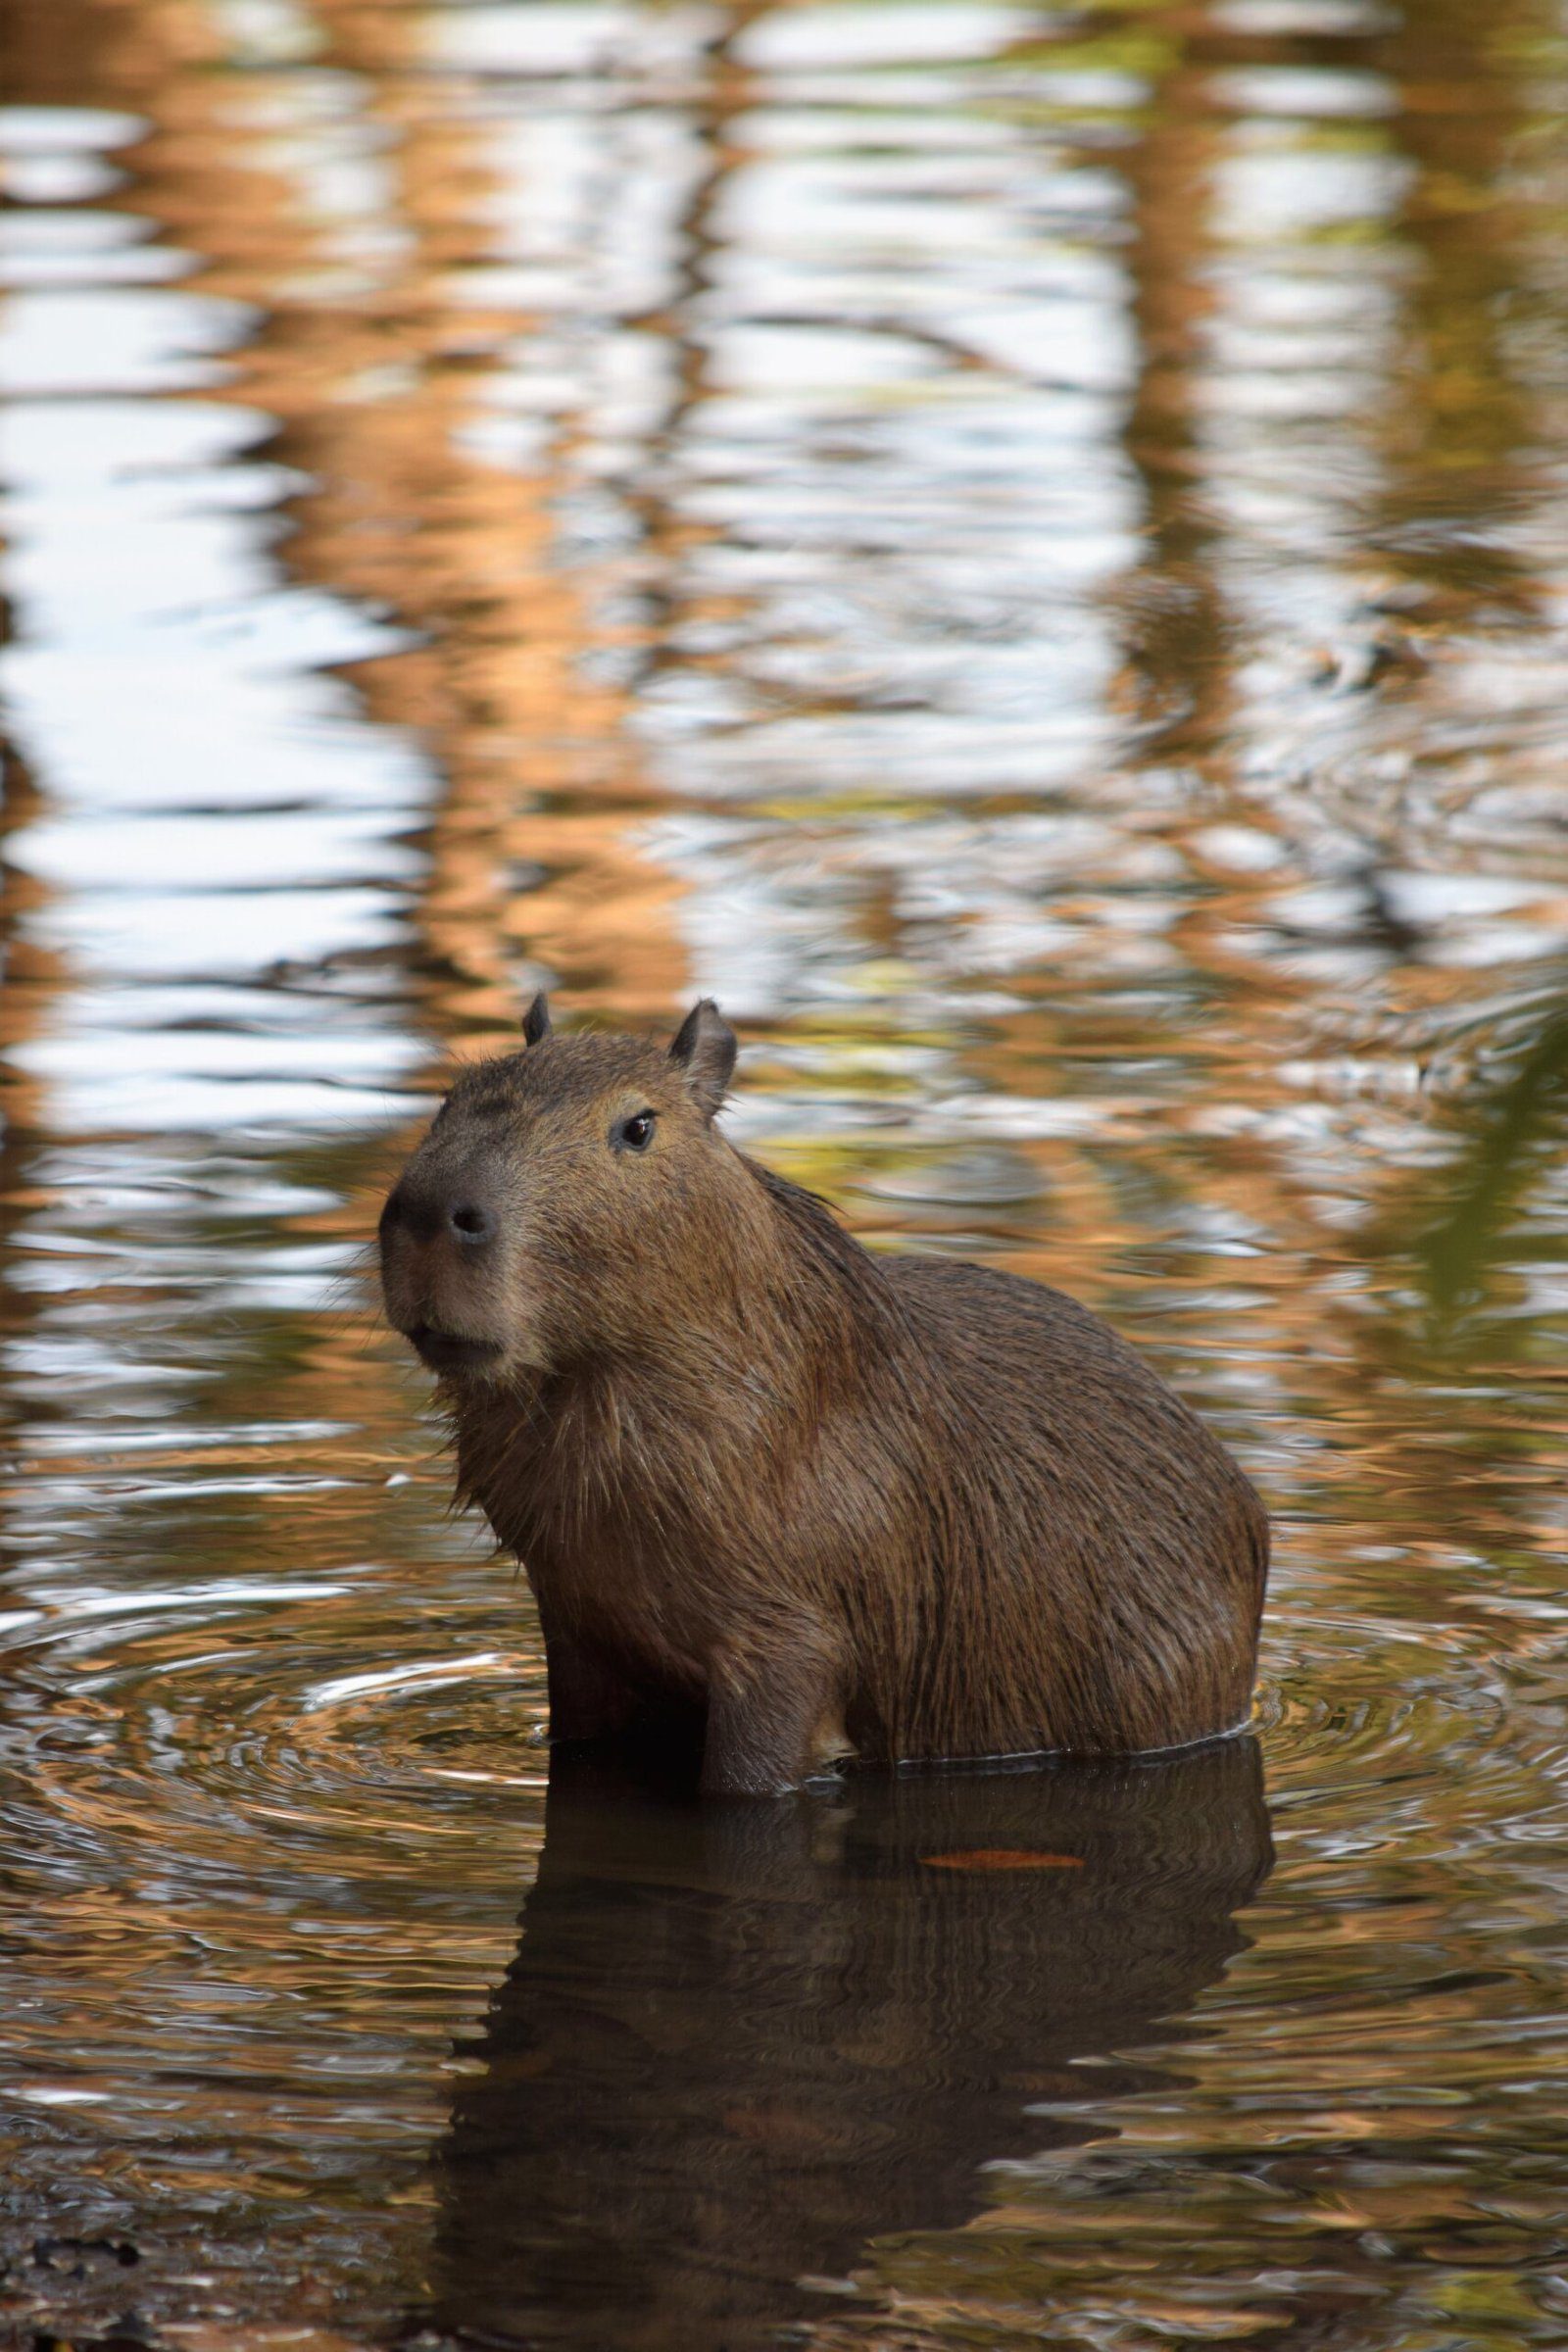 Adorable Capybara: A Collection of Images